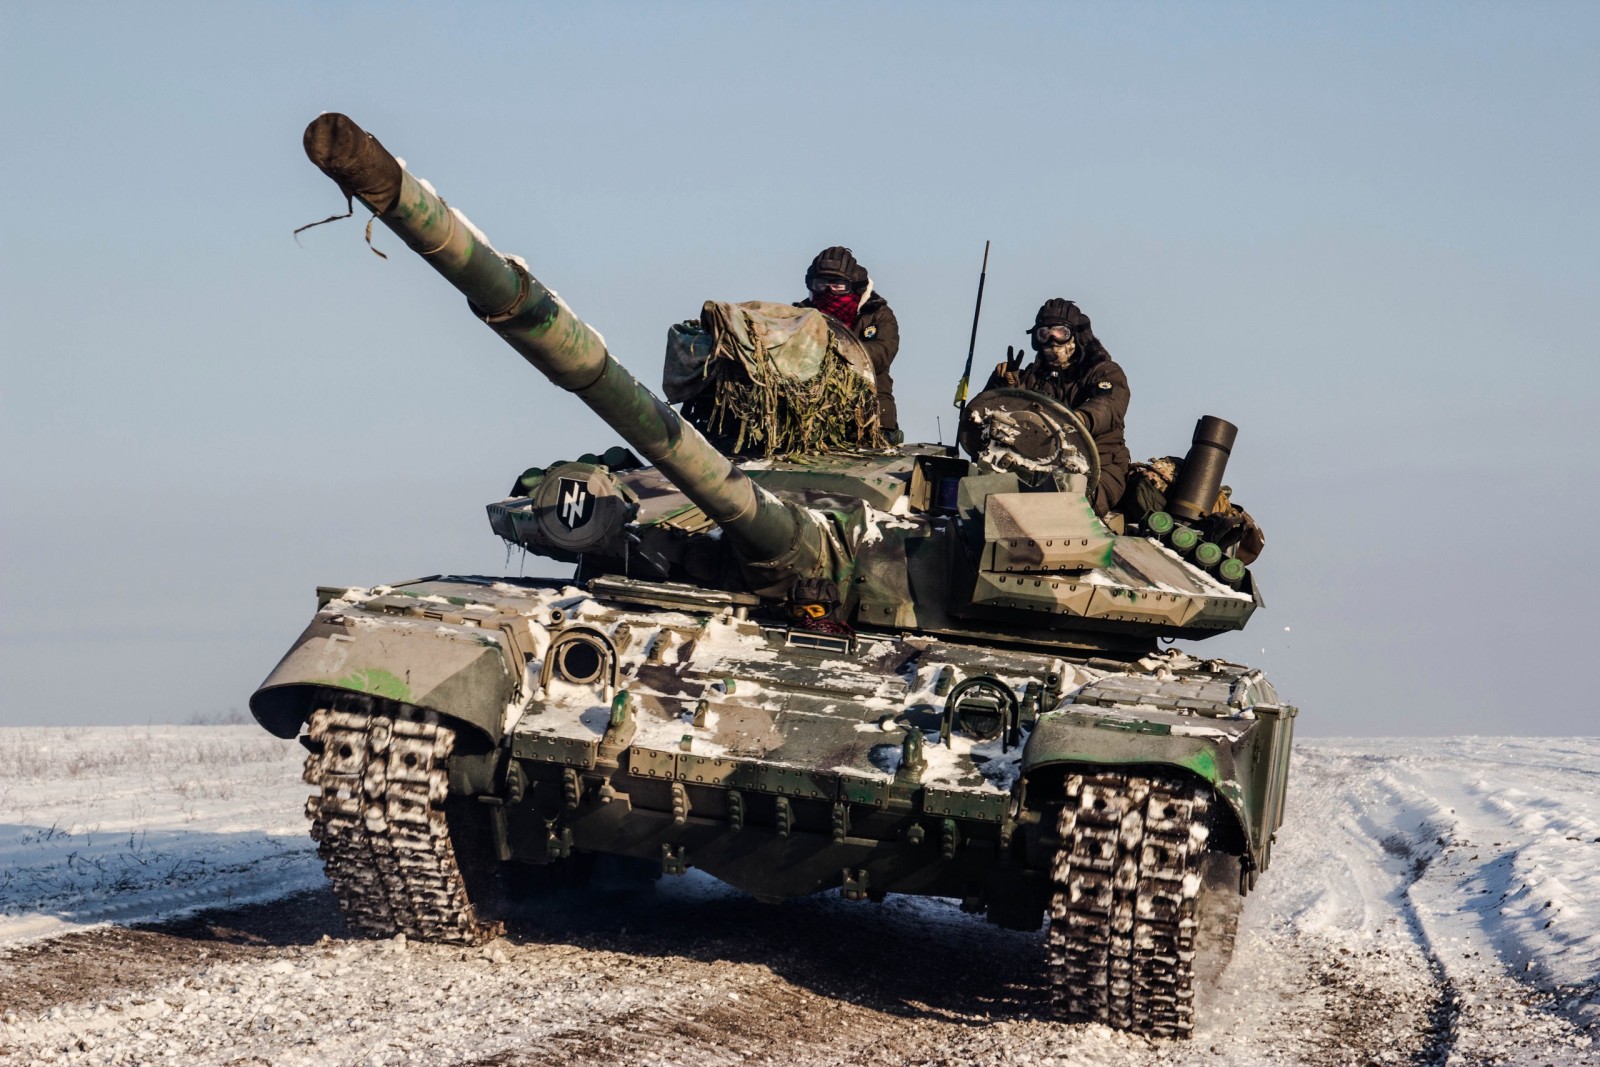 Súng máy, Ukraine, Lính, xe tăng, Máy bay chiến đấu, tôn kính, 2016., "Azov"